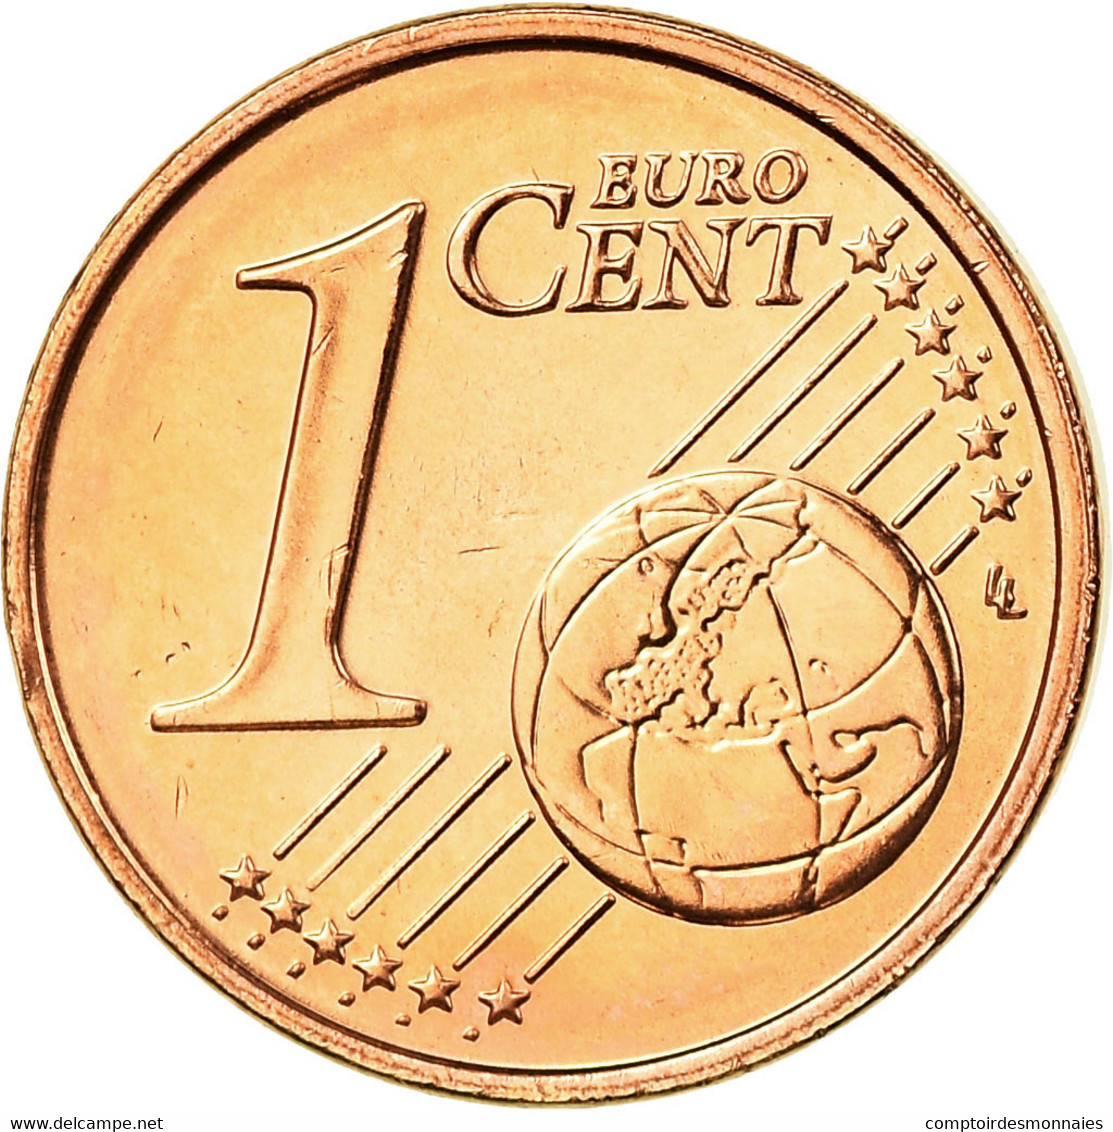 IRELAND REPUBLIC, Euro Cent, 2007, FDC, Copper Plated Steel, KM:32 - Irlanda